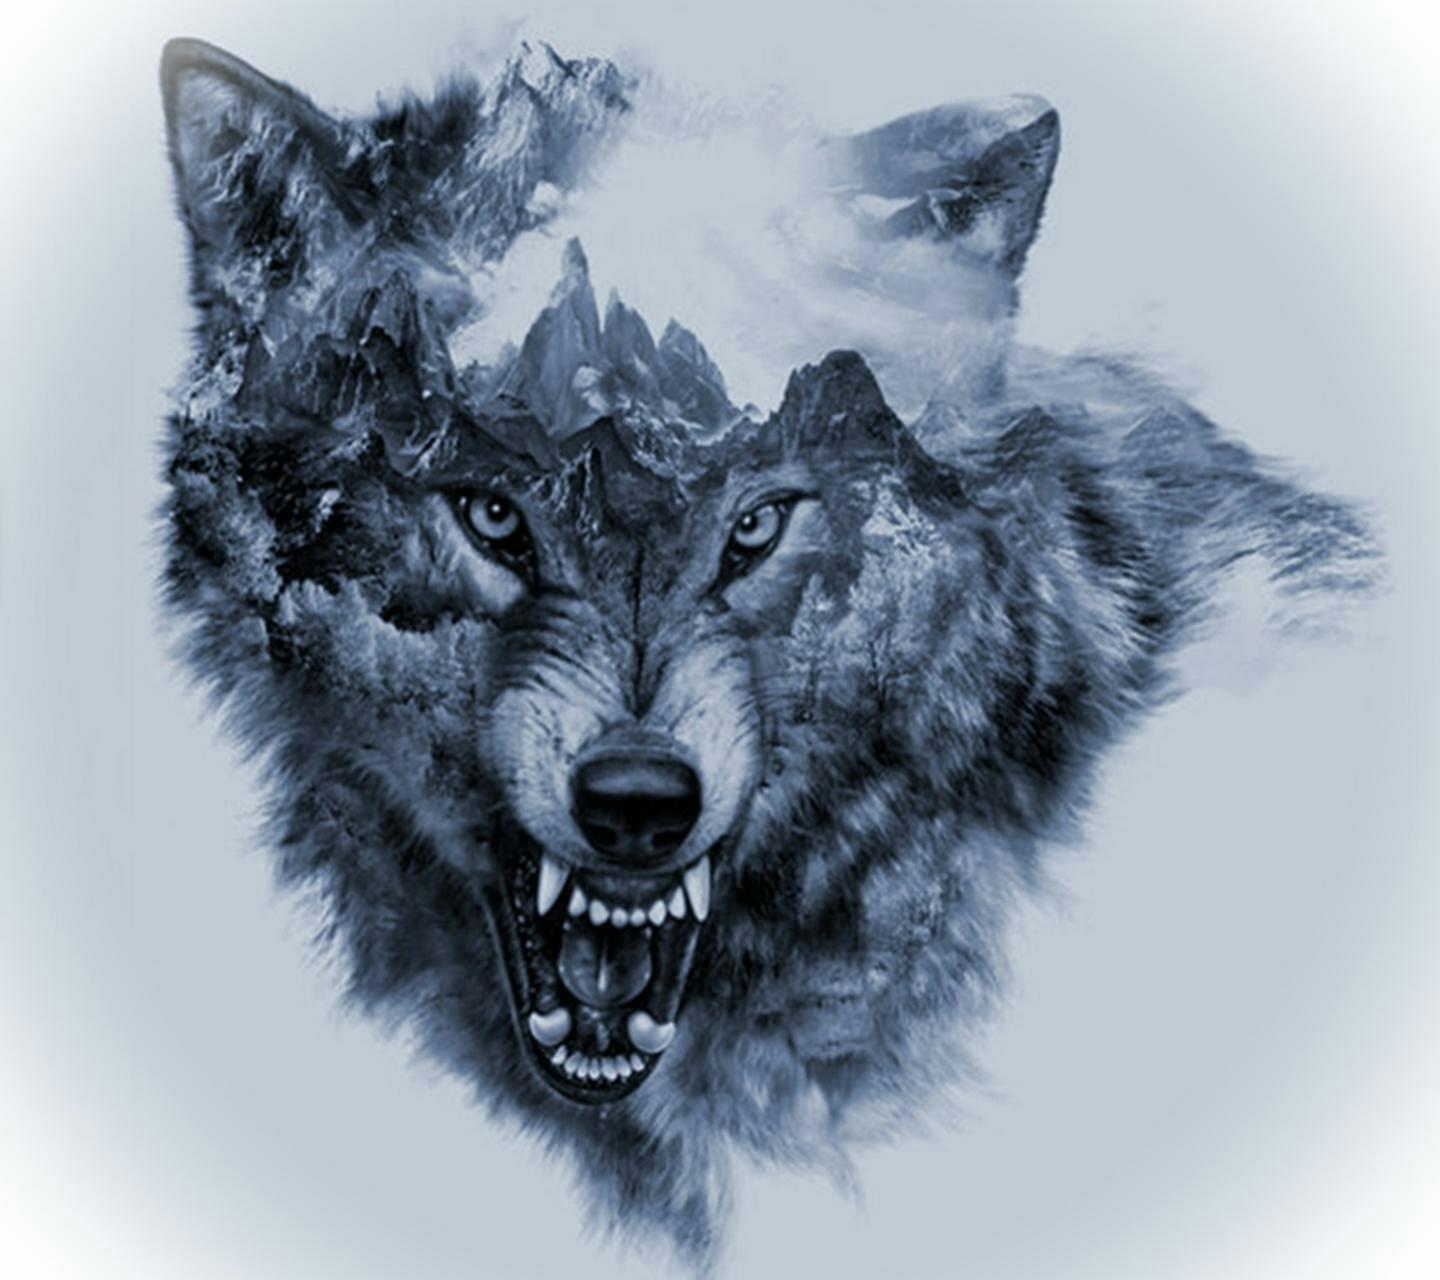 wolf danger - Image by Miller David Garcia Parra